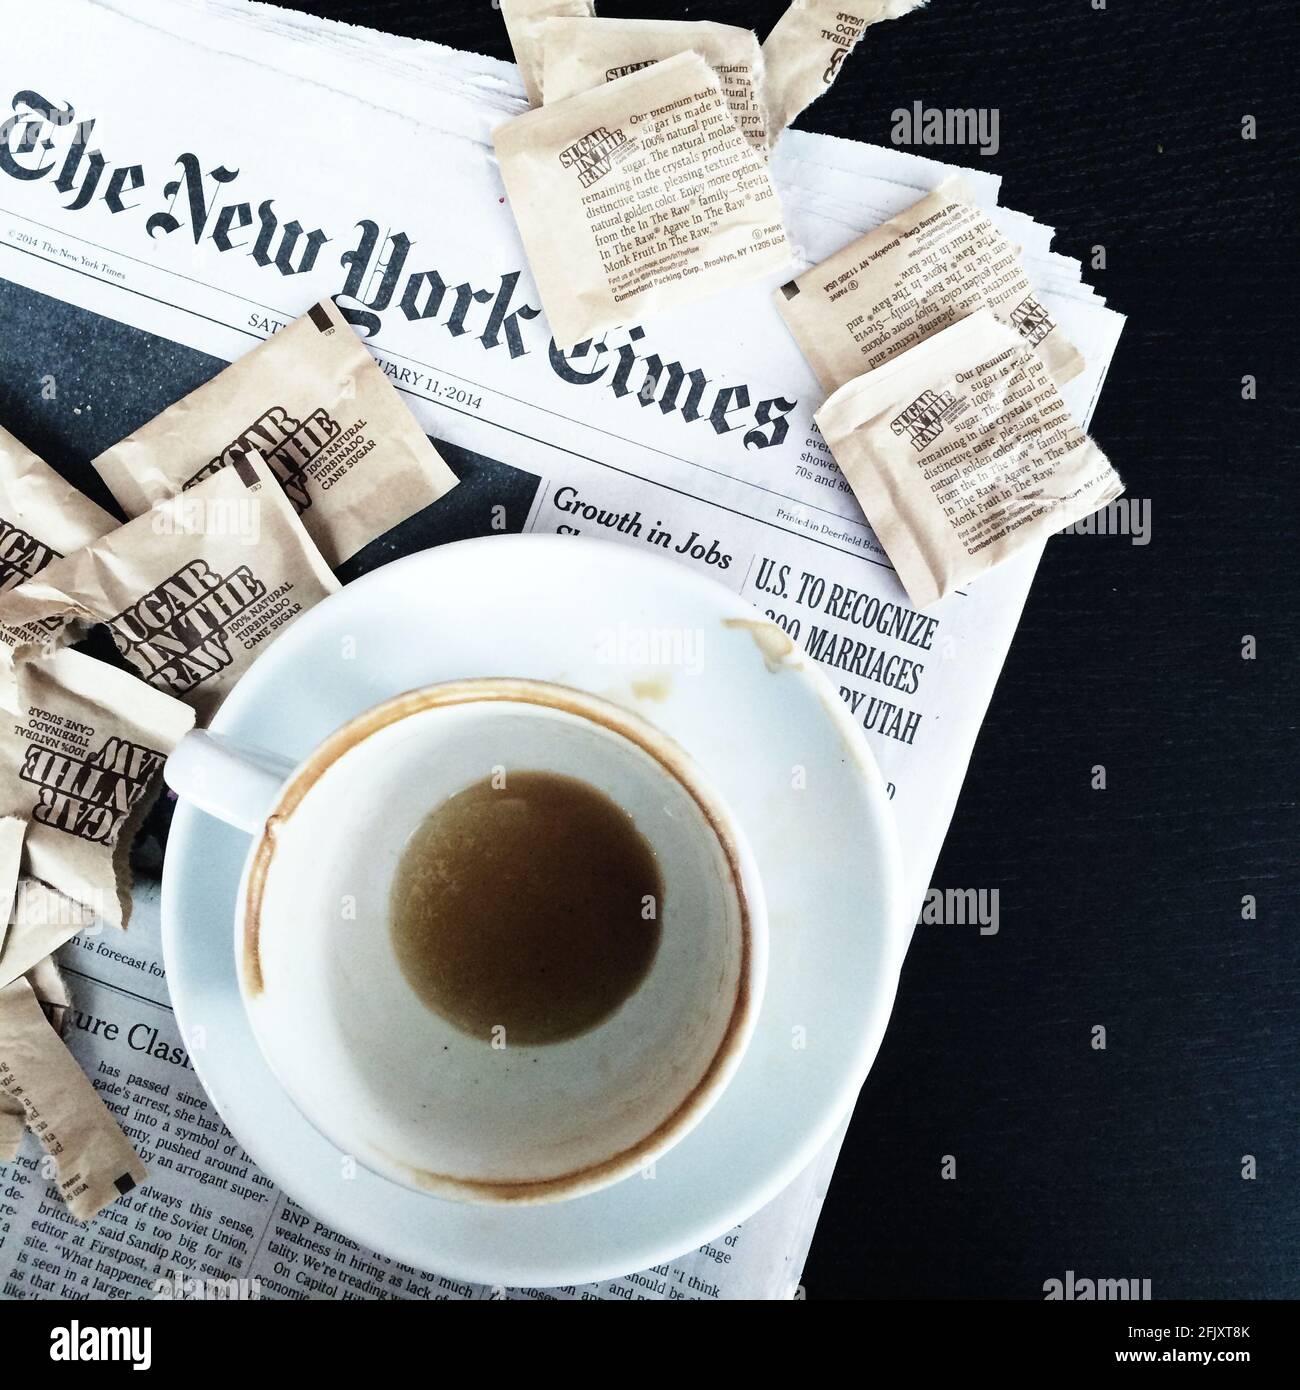 Eine schmutzige Tasse Kaffee, leer mit Kaffeemarken, die auf der New York Times Zeitung sitzen, und Zuckerpakete von Sugar im Rohkost umgeben sie Stockfoto